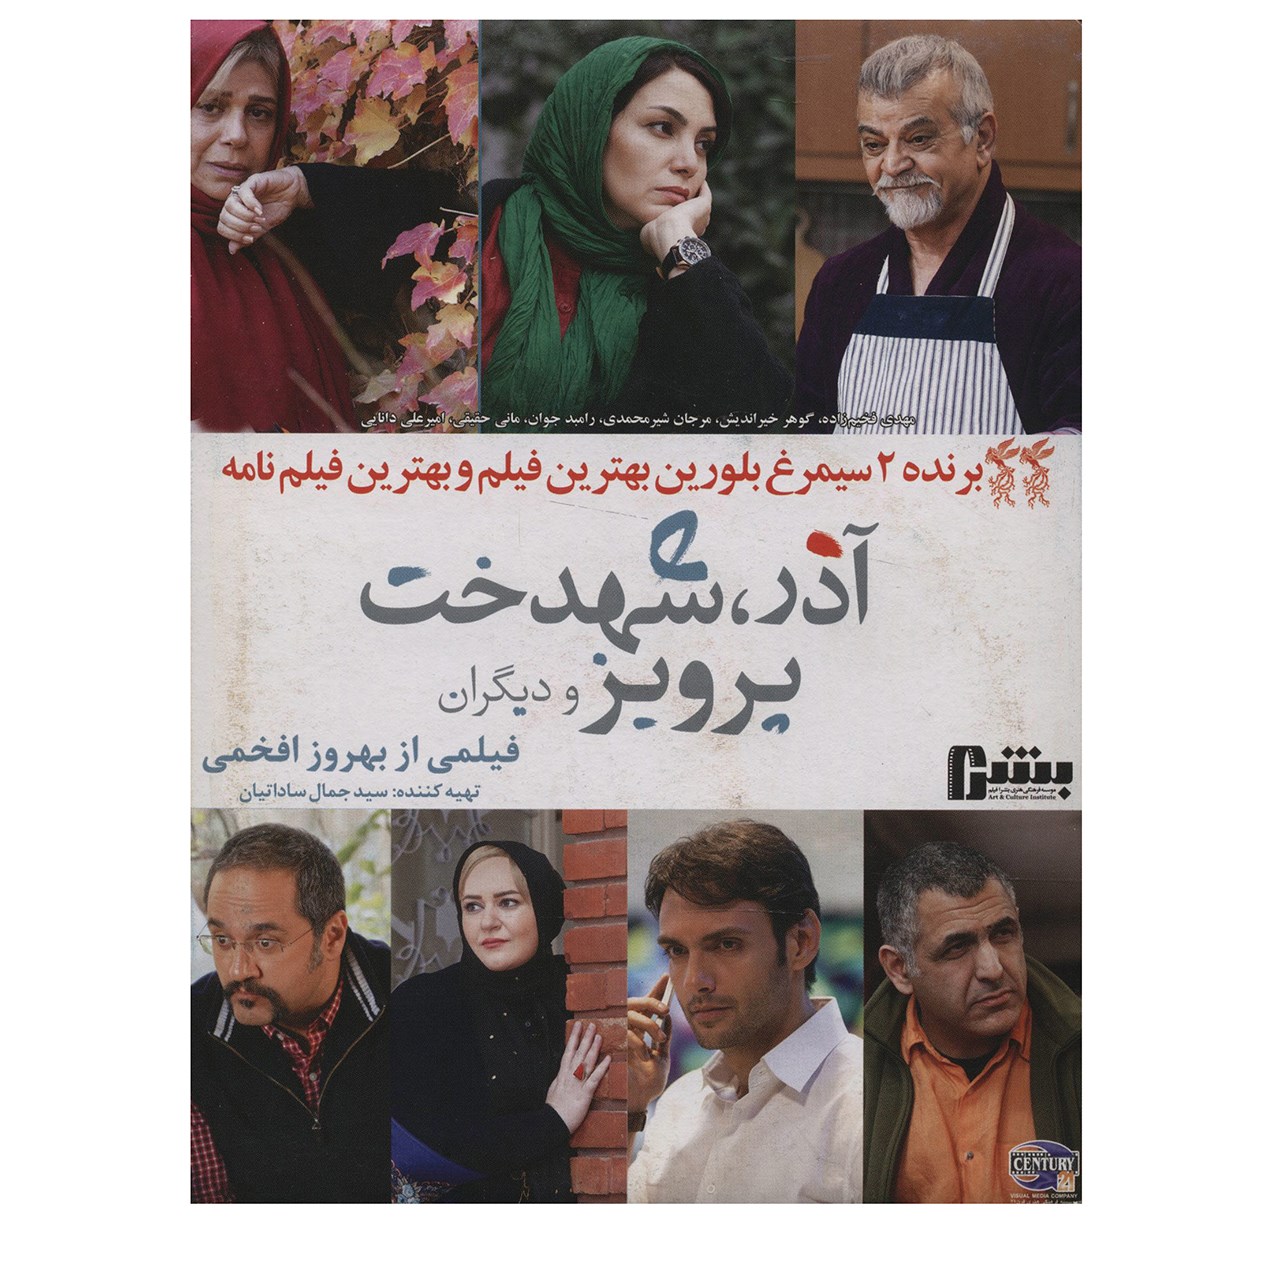 فیلم سینمایی آذر شهدخت پرویز و دیگران اثر بهروز افخمی